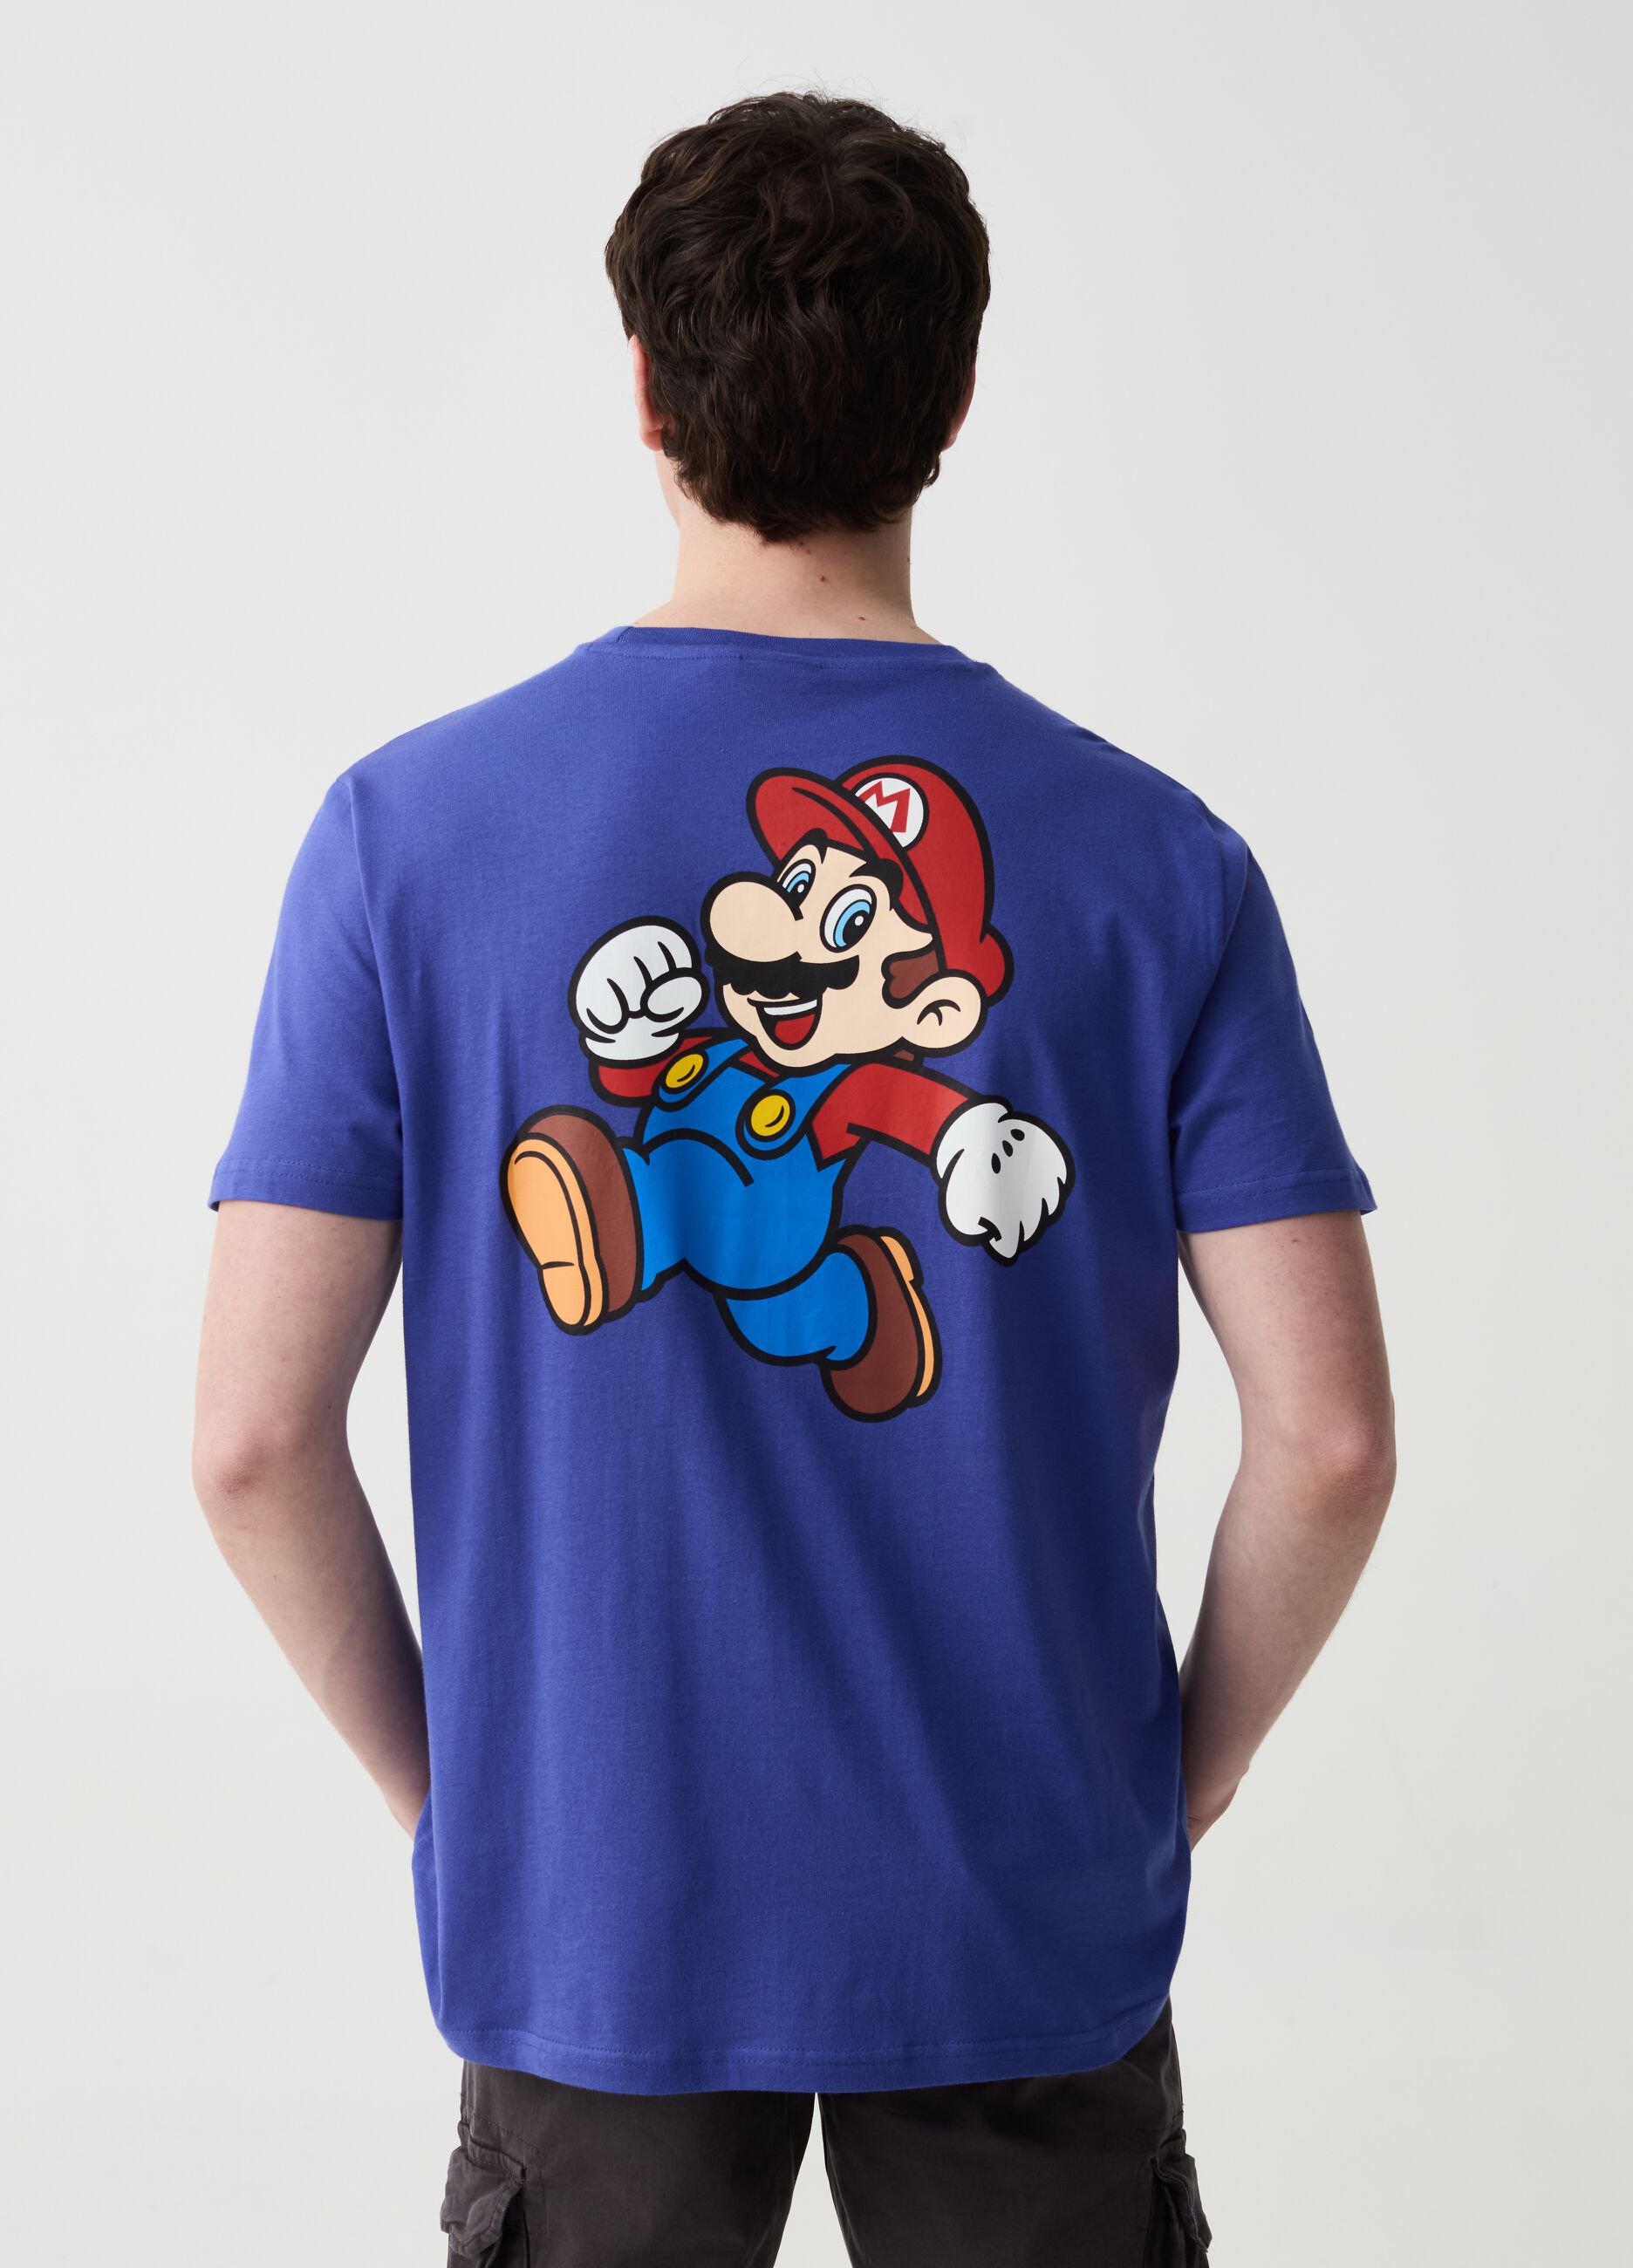 Camiseta de algodón estampado Super Mario™